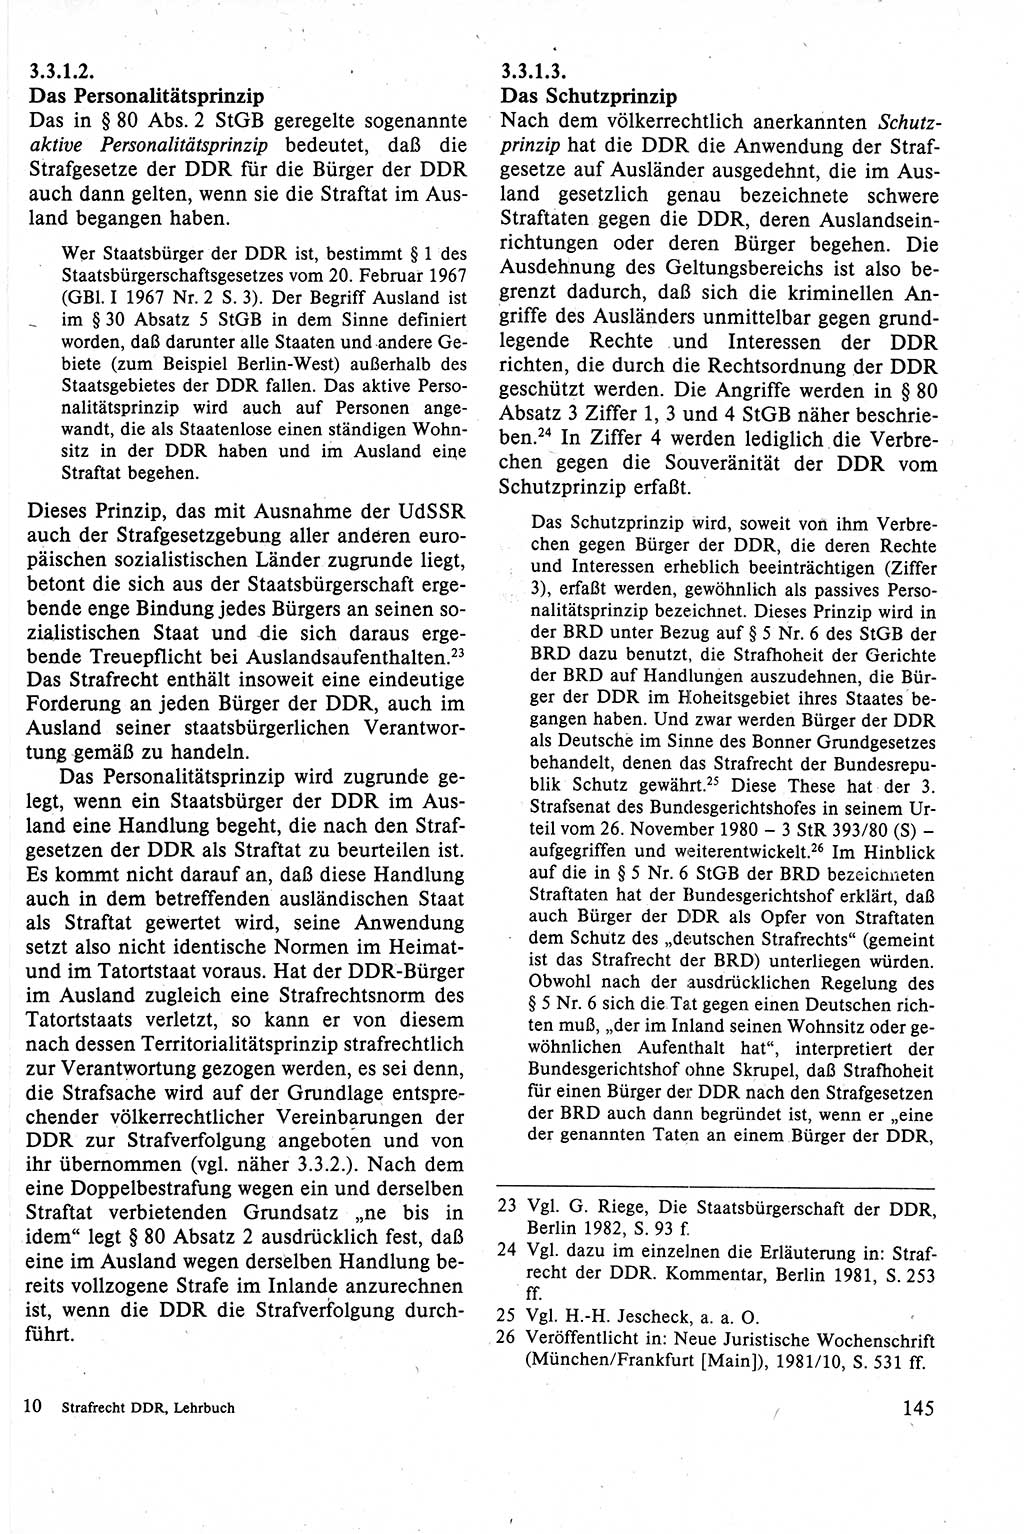 Strafrecht der DDR (Deutsche Demokratische Republik), Lehrbuch 1988, Seite 145 (Strafr. DDR Lb. 1988, S. 145)